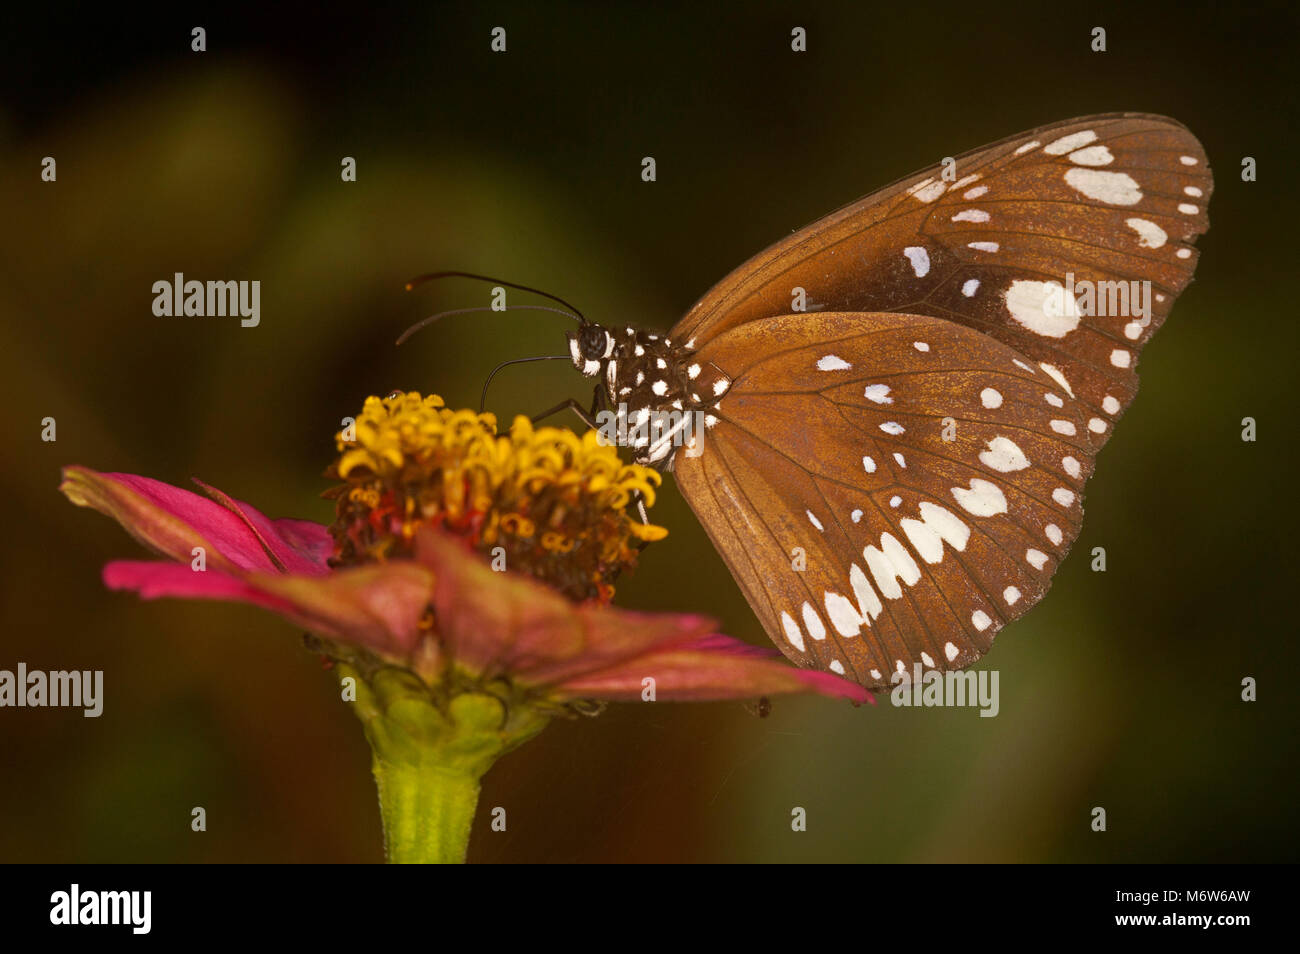 Australische Krähe Schmetterling, Euploea core, mit gefalteten braune Flügel mit weißen Fütterung auf zinnia Blume gegen den dunklen Hintergrund entdeckt Stockfoto